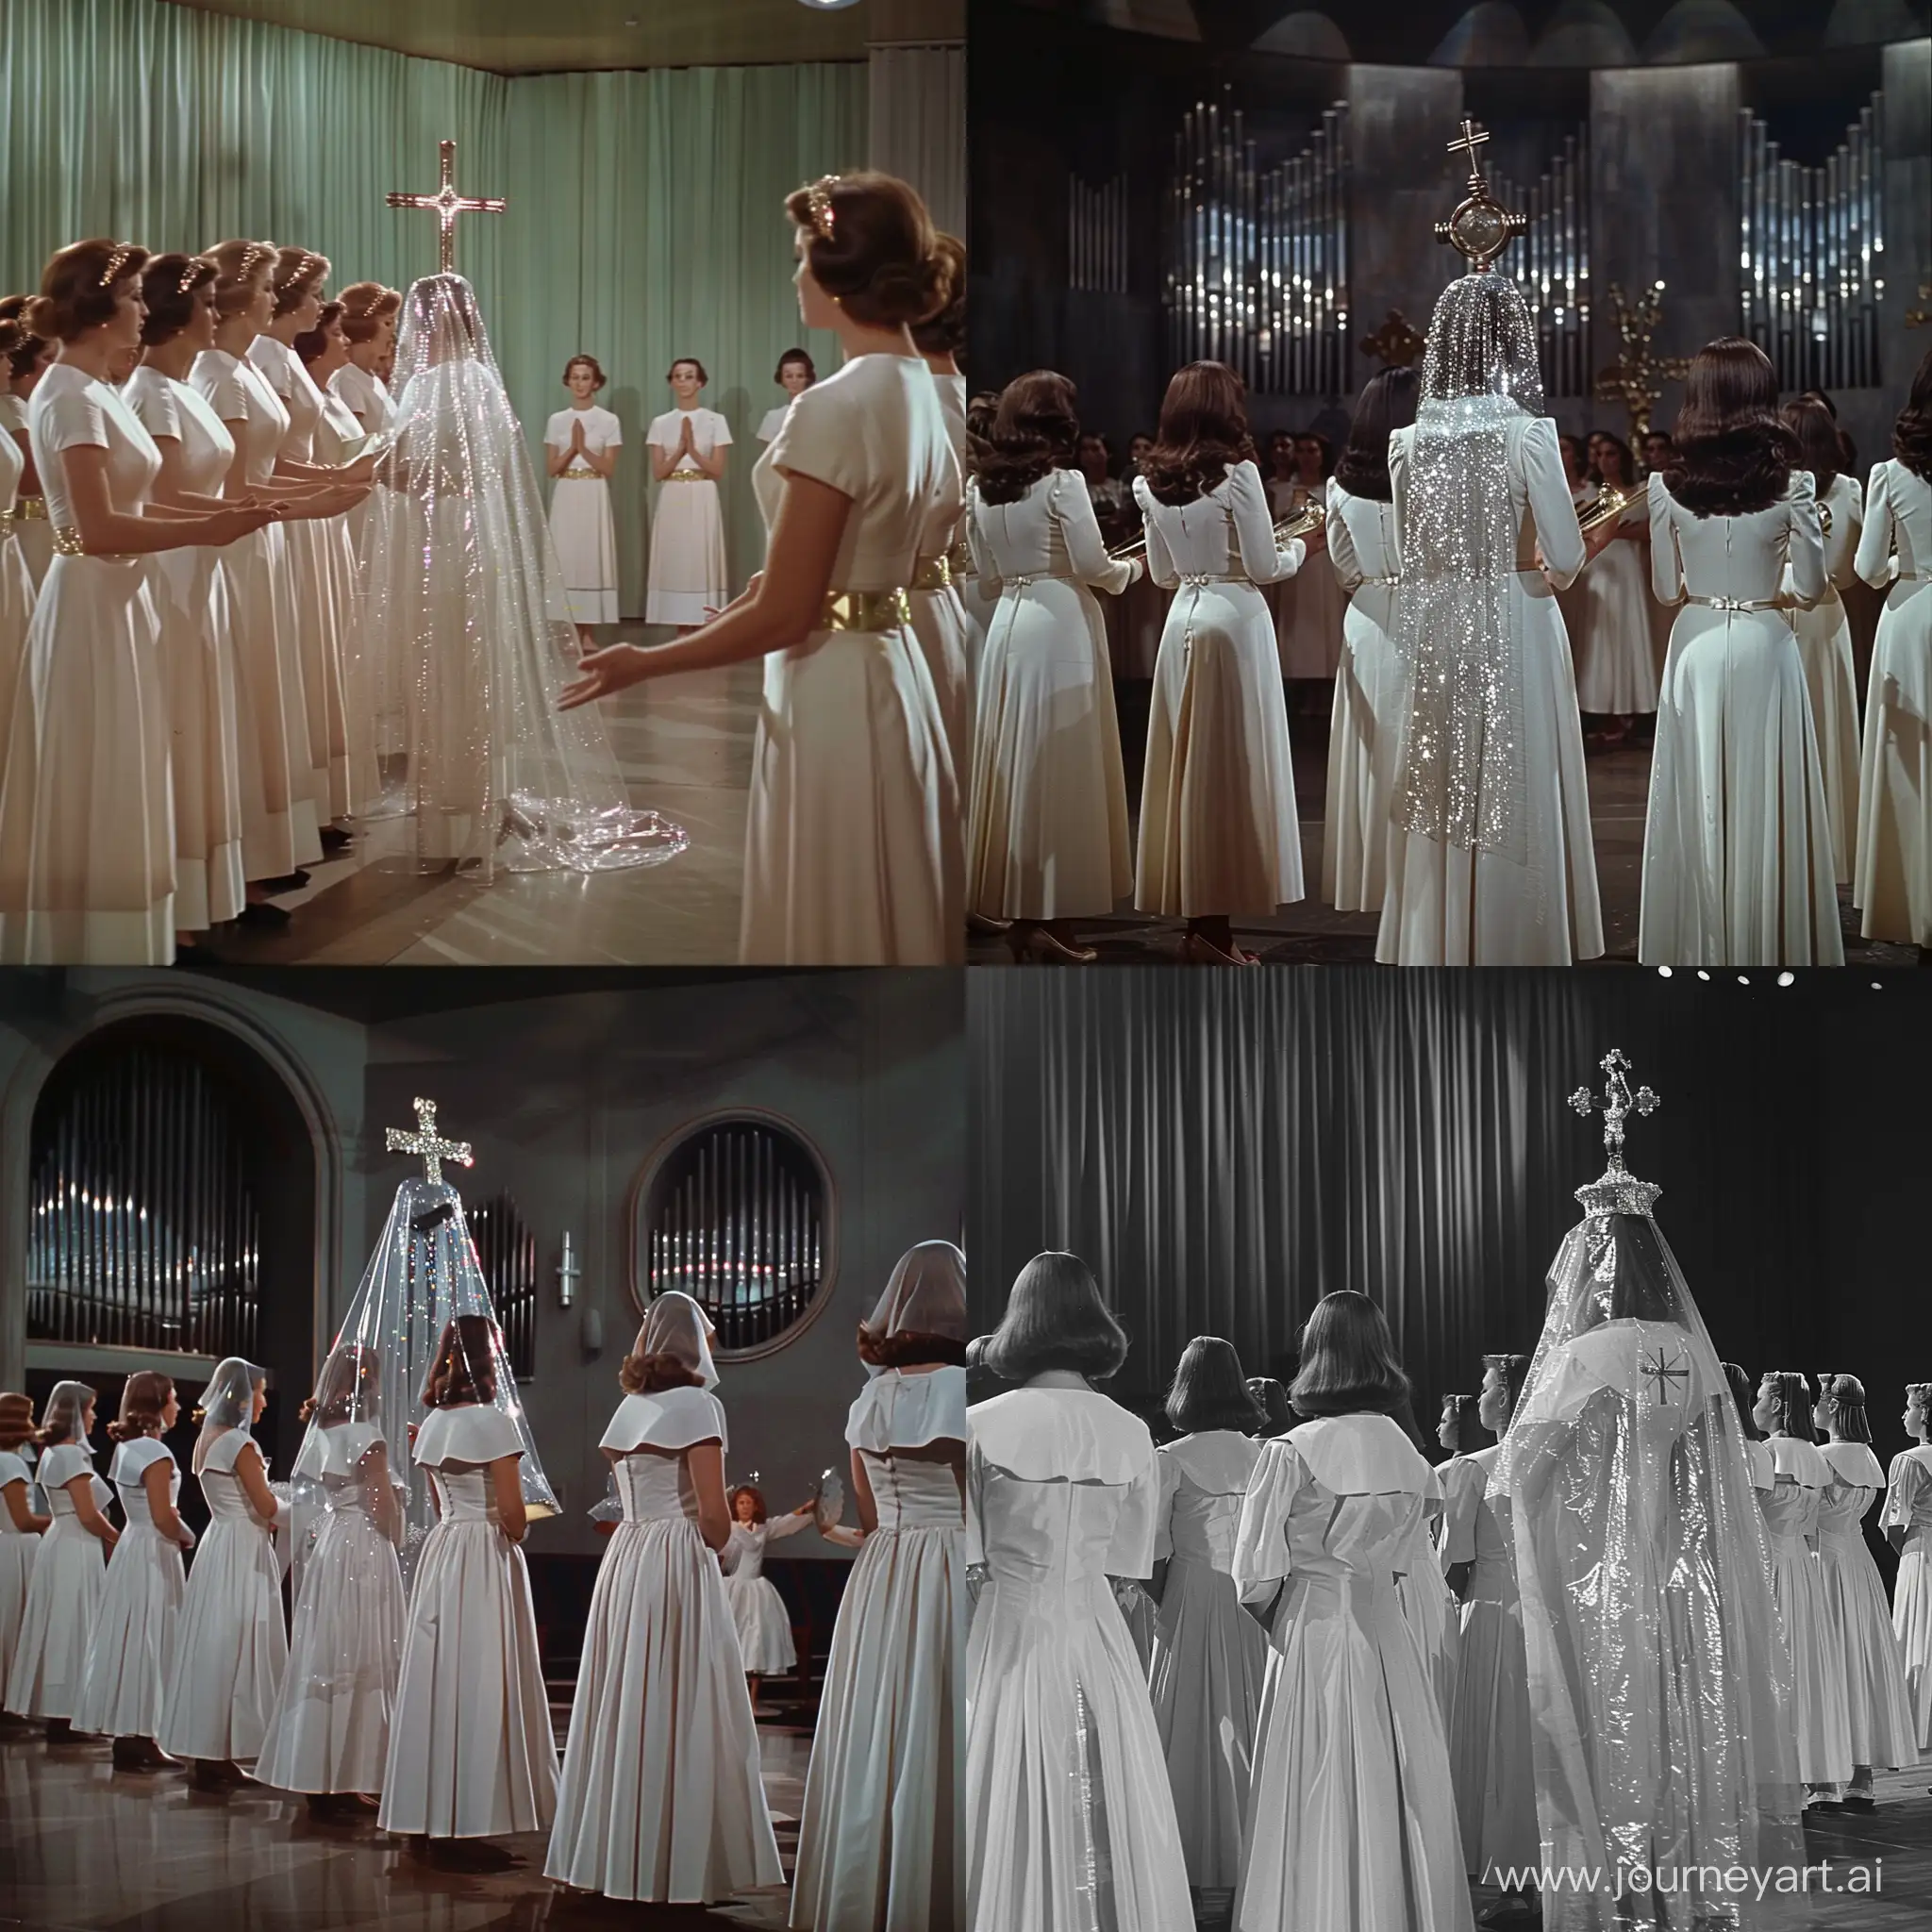 Elegant-Women-in-White-Choir-Dresses-with-Shimmering-Crosses-1960s-Movie-Scene